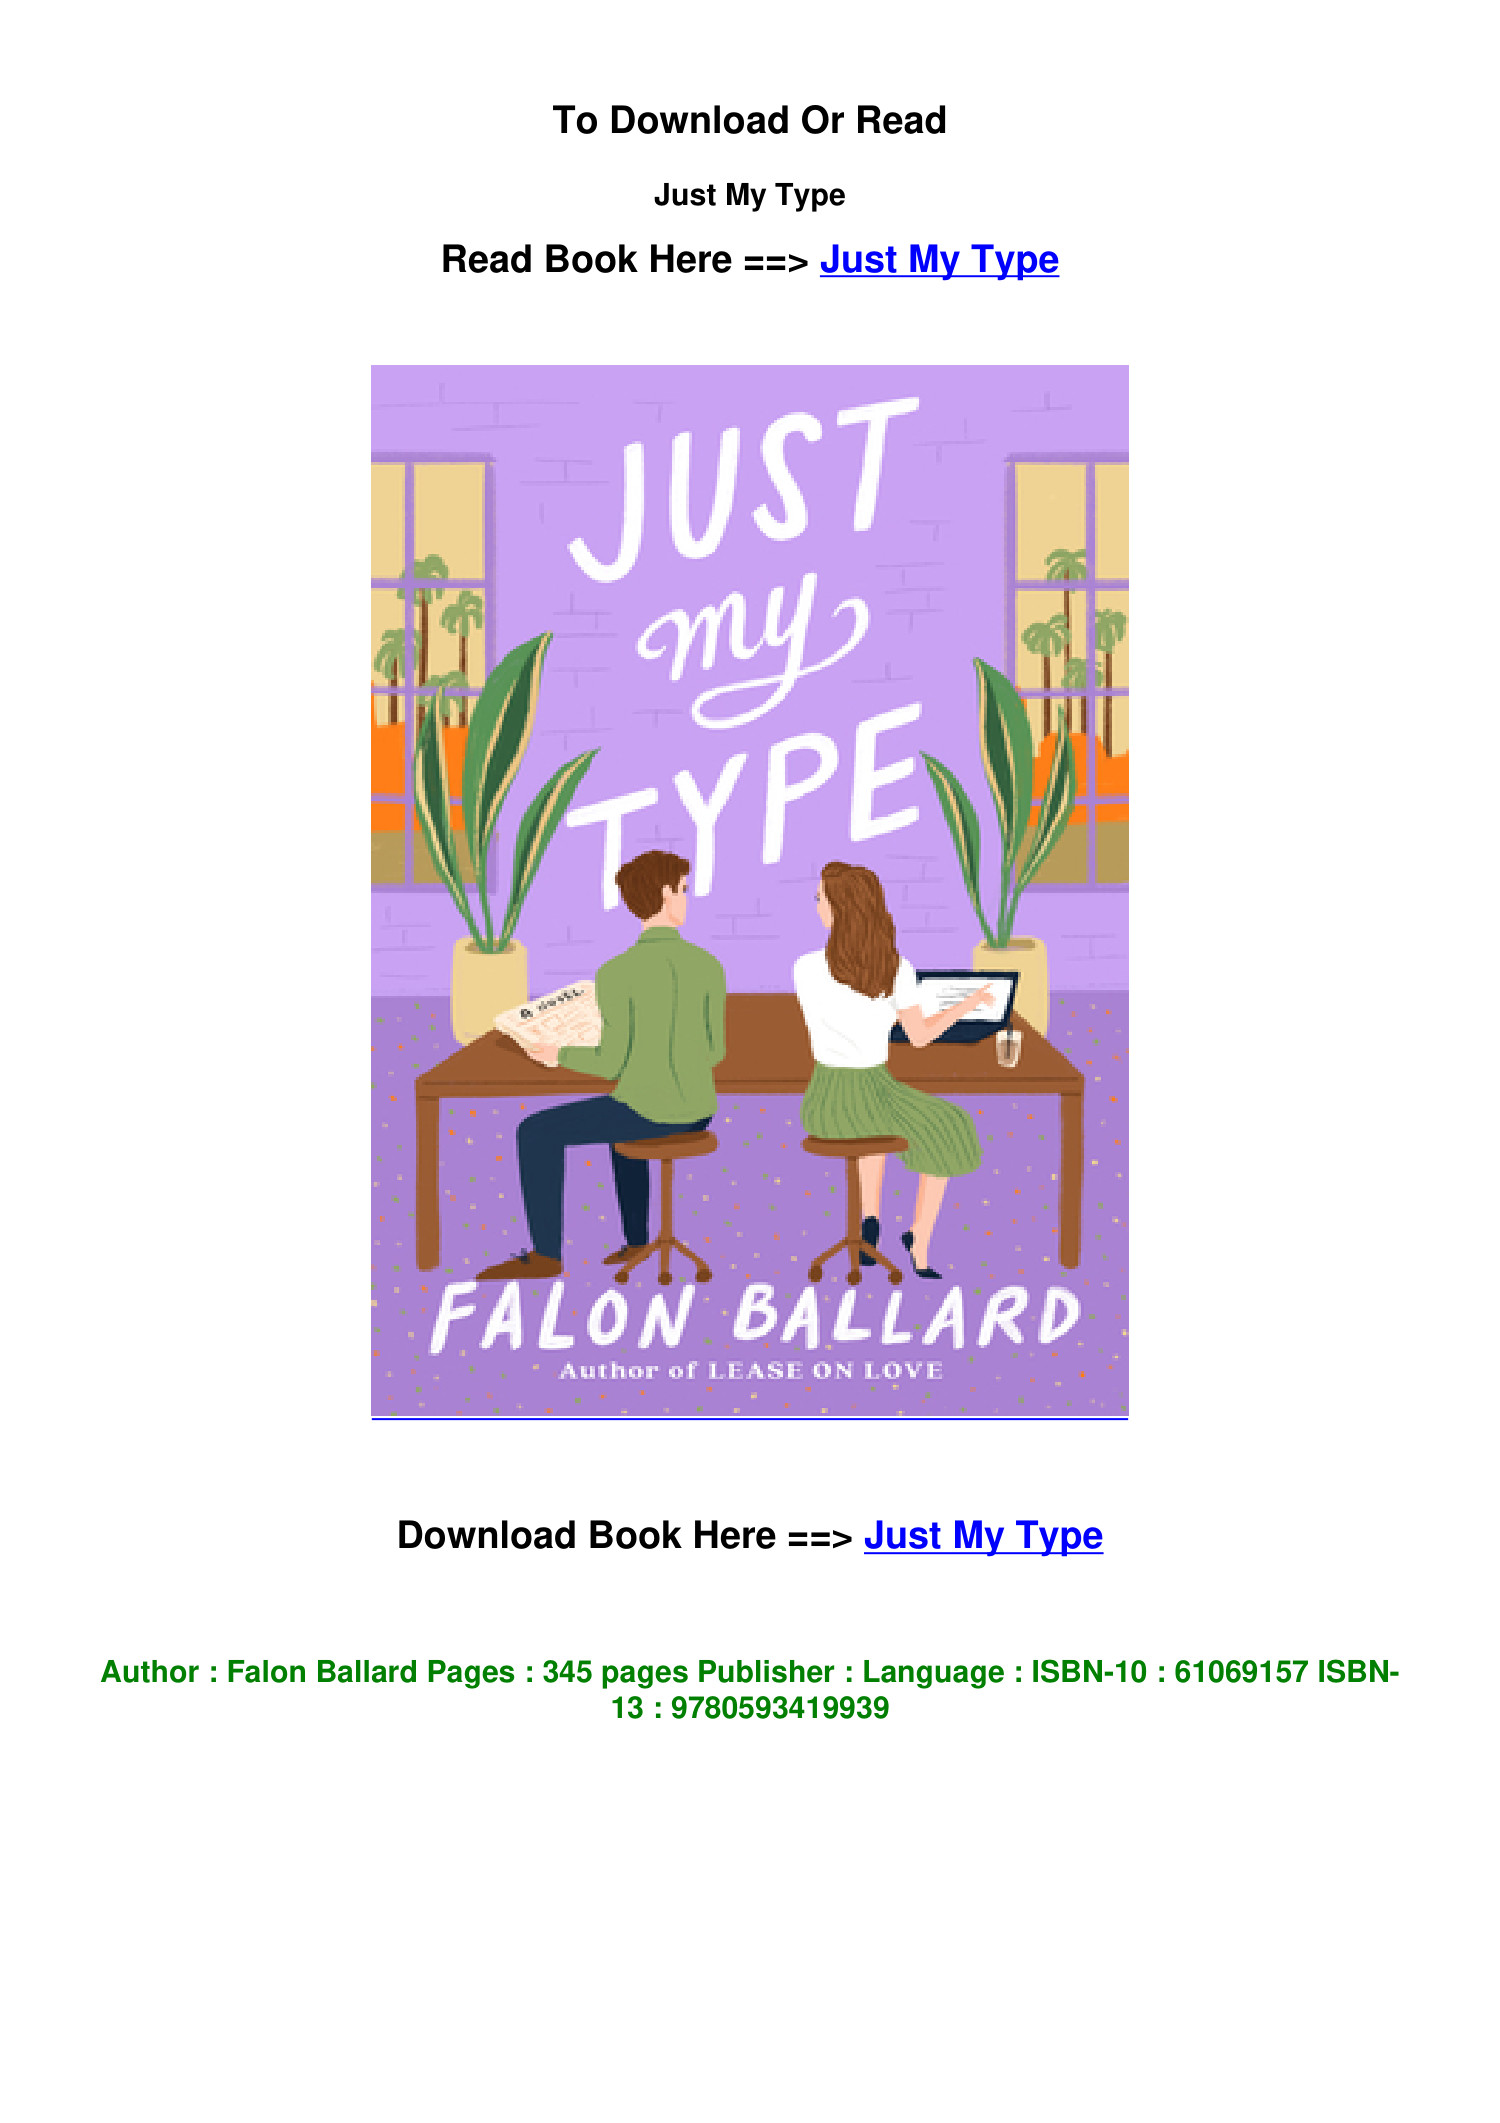 Just My Type by Falon Ballard